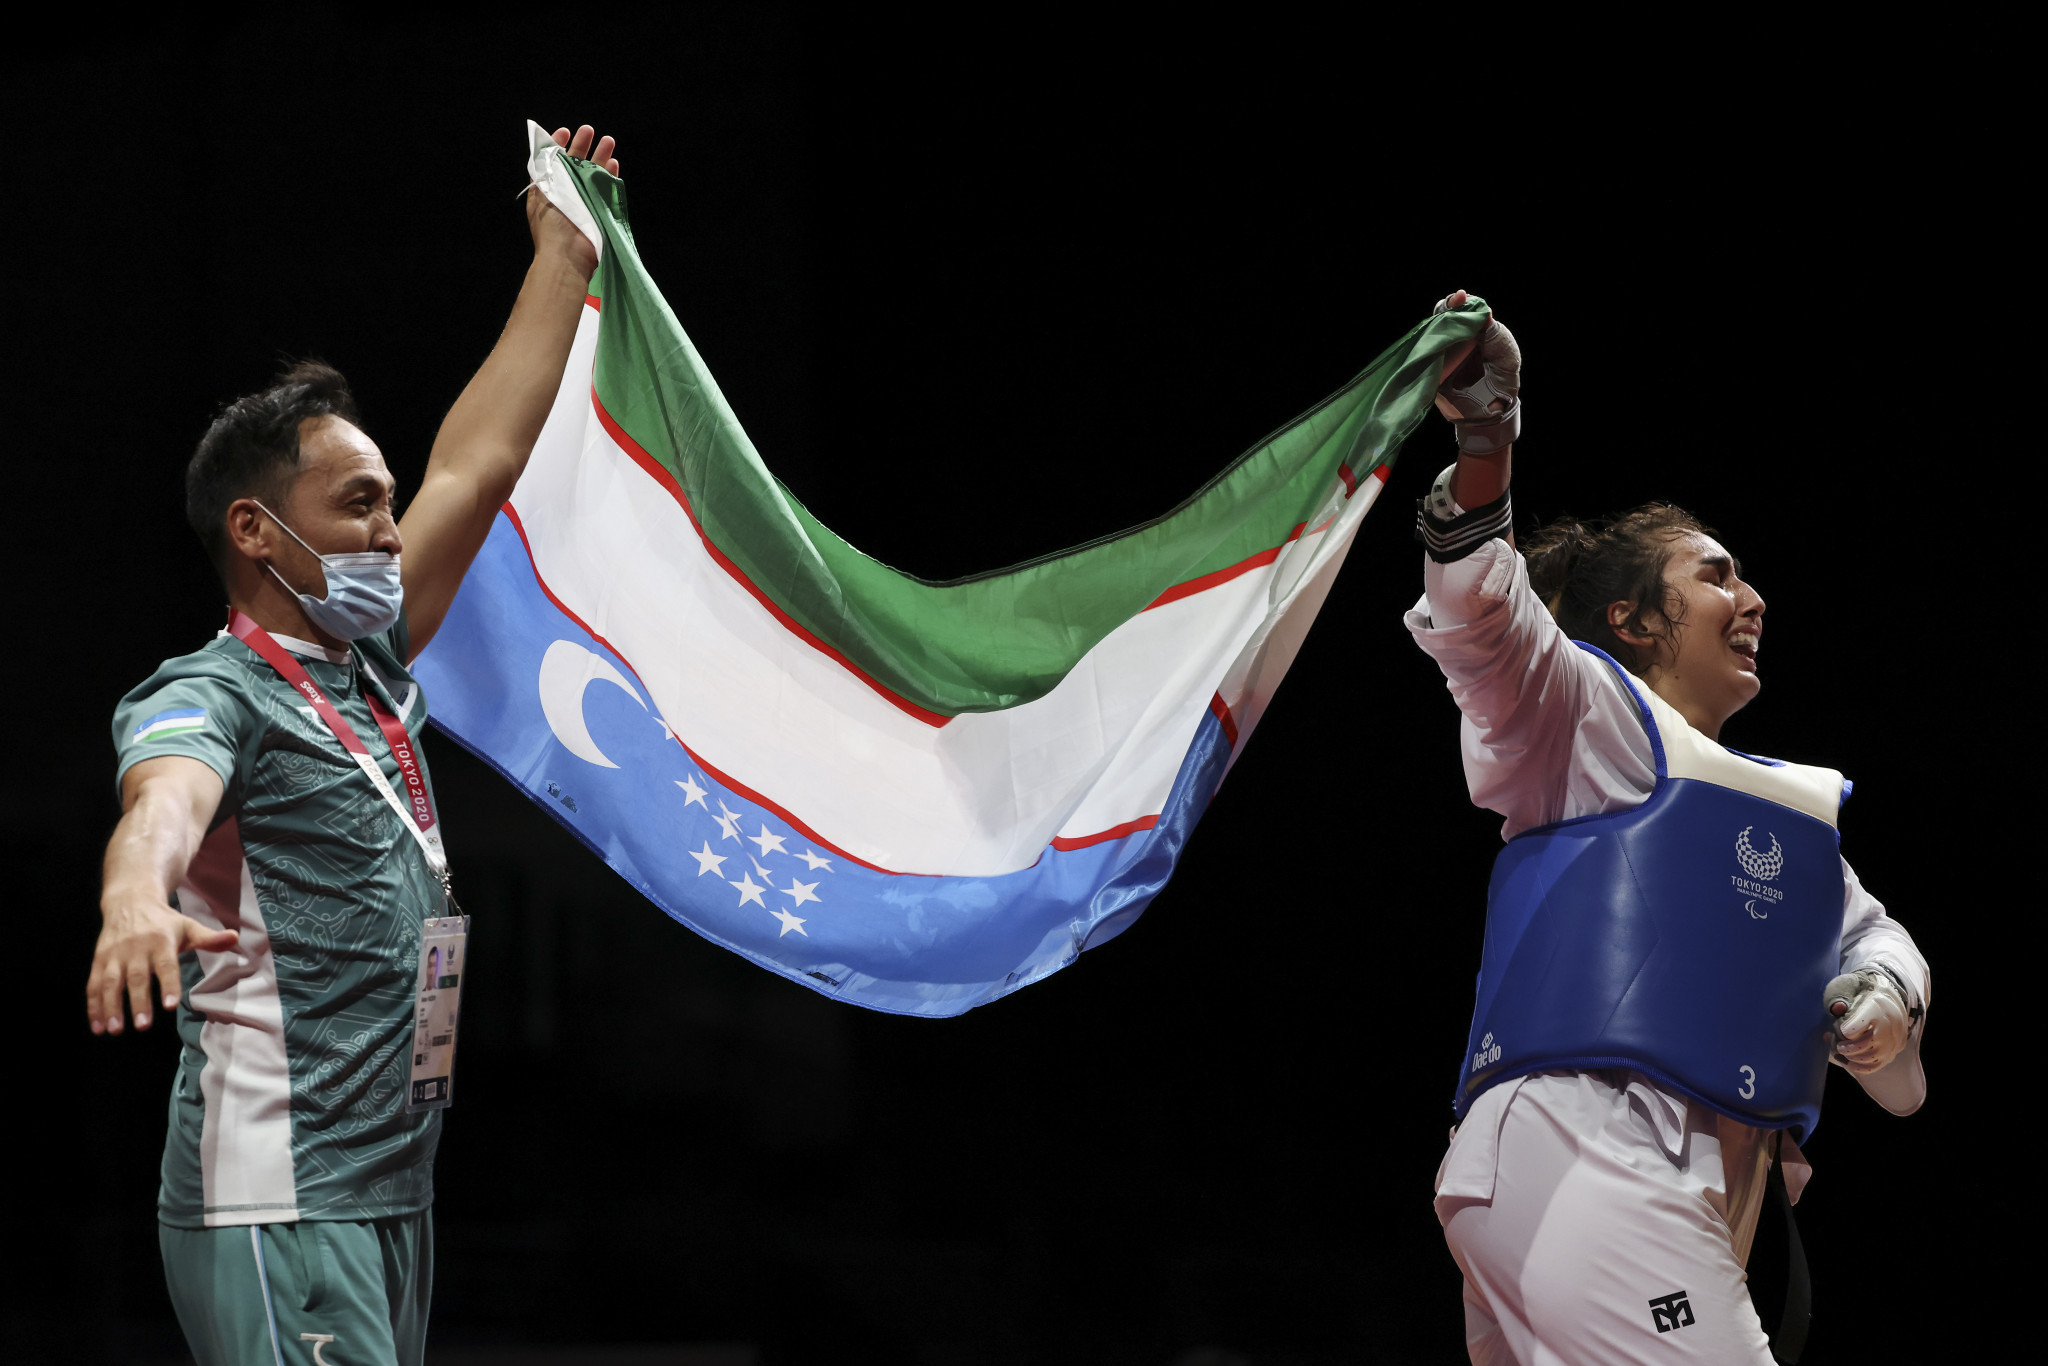 Paralympic champions star at inaugural Para taekwondo Grand Prix in Sofia